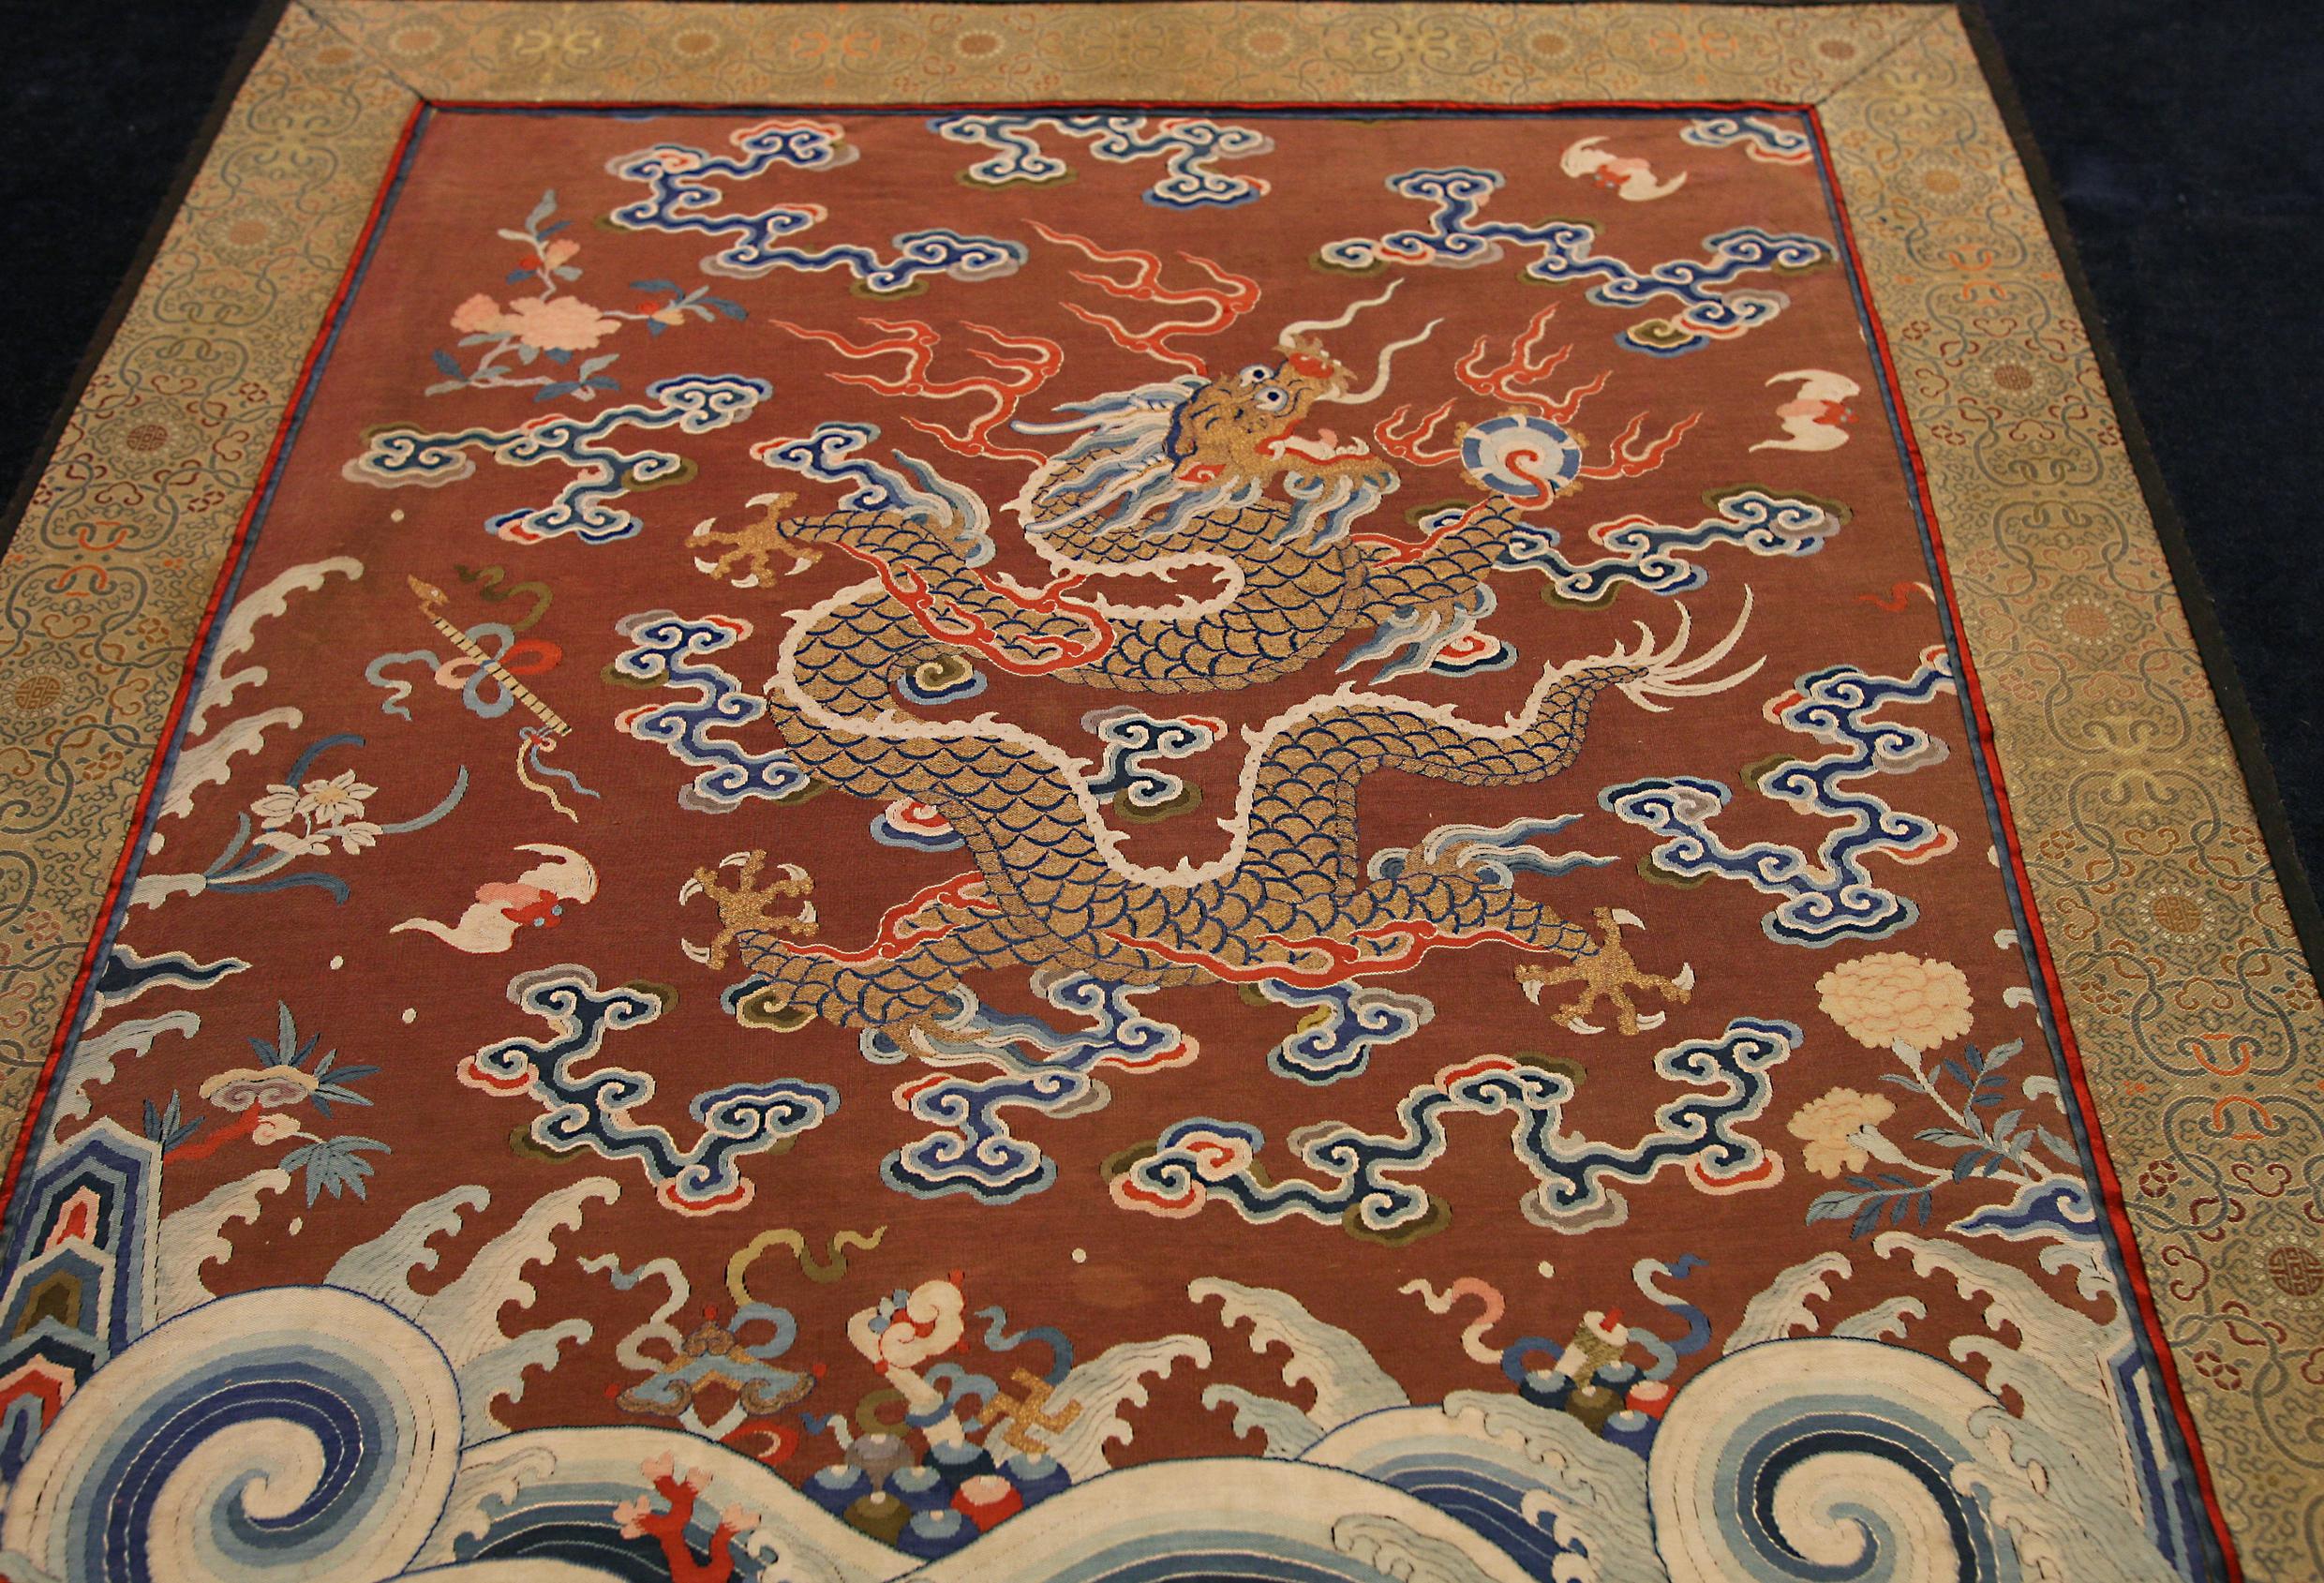 Es handelt sich um ein chinesisches Textil aus kaiserlicher Seide aus dem 18. Jahrhundert, das 79 x 47 cm groß ist. Dieses seltene Exemplar ist in ausgezeichnetem Zustand erhalten und hat seine dramatischen gesättigten Farben beibehalten, die einen